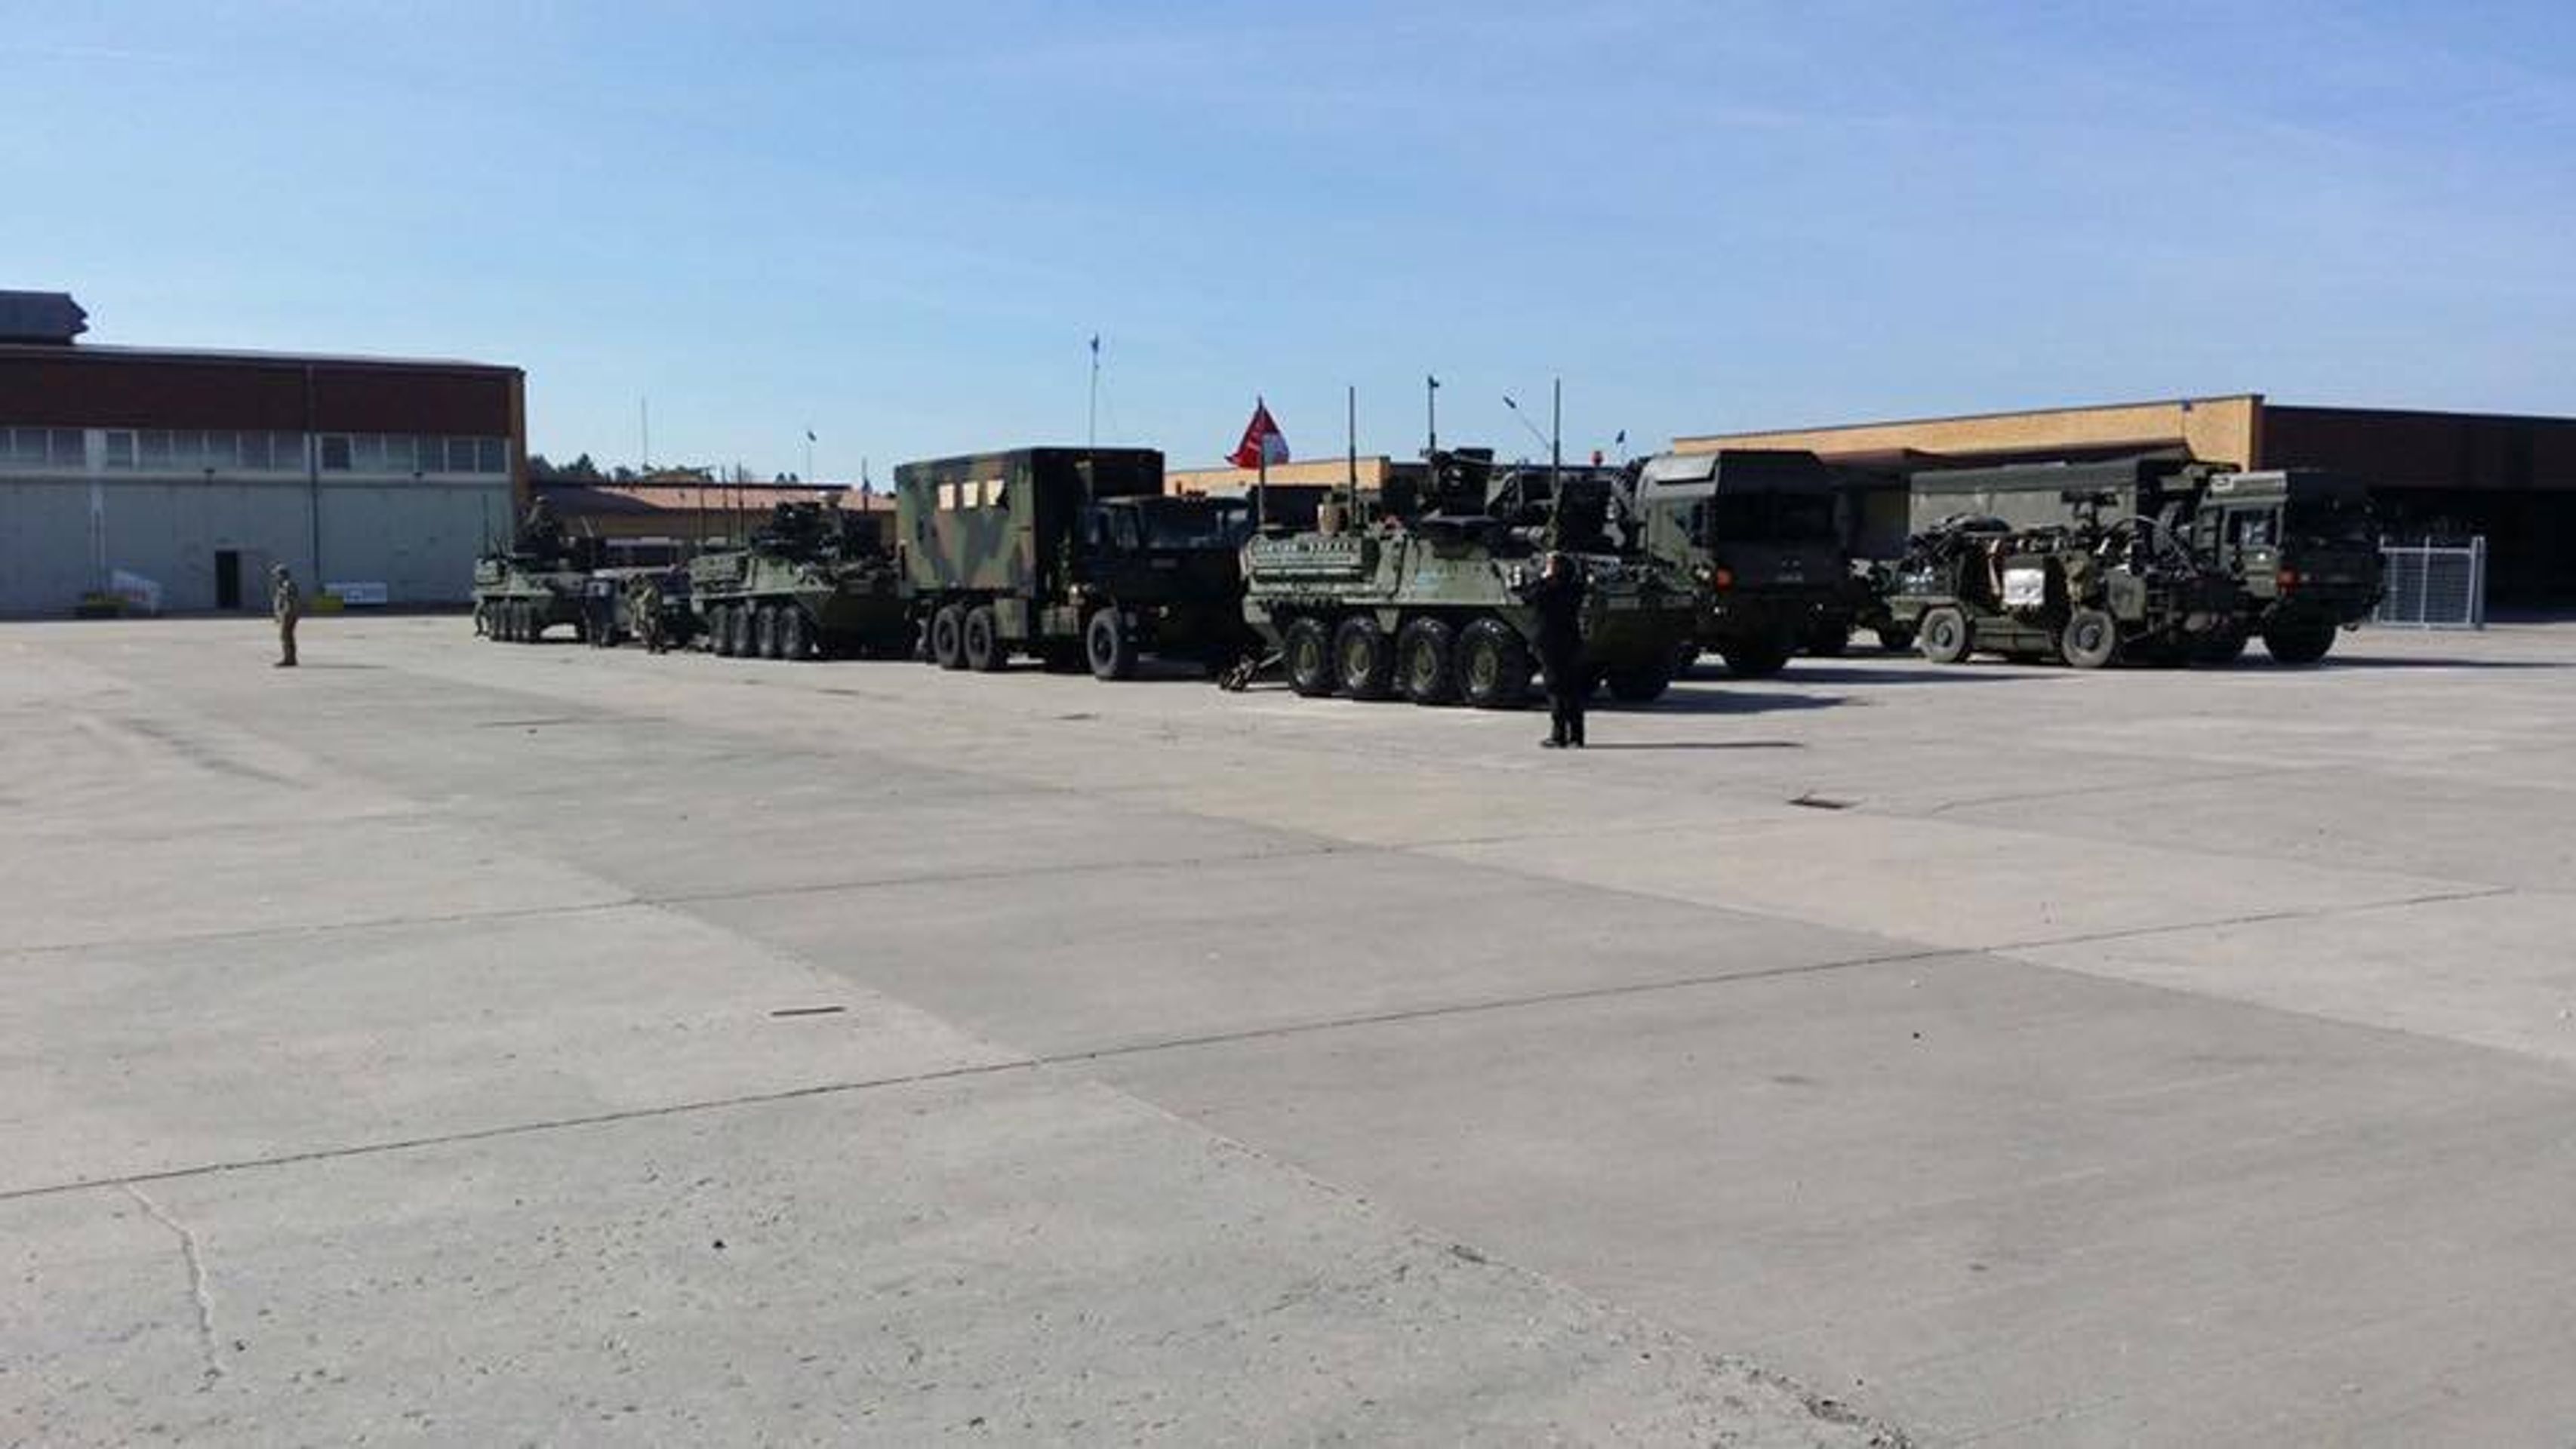 Konvoj americké armády míří do Česka - 1 - GALERIE: Americký armádní konvoj před vjezdem do Česka (5/5)